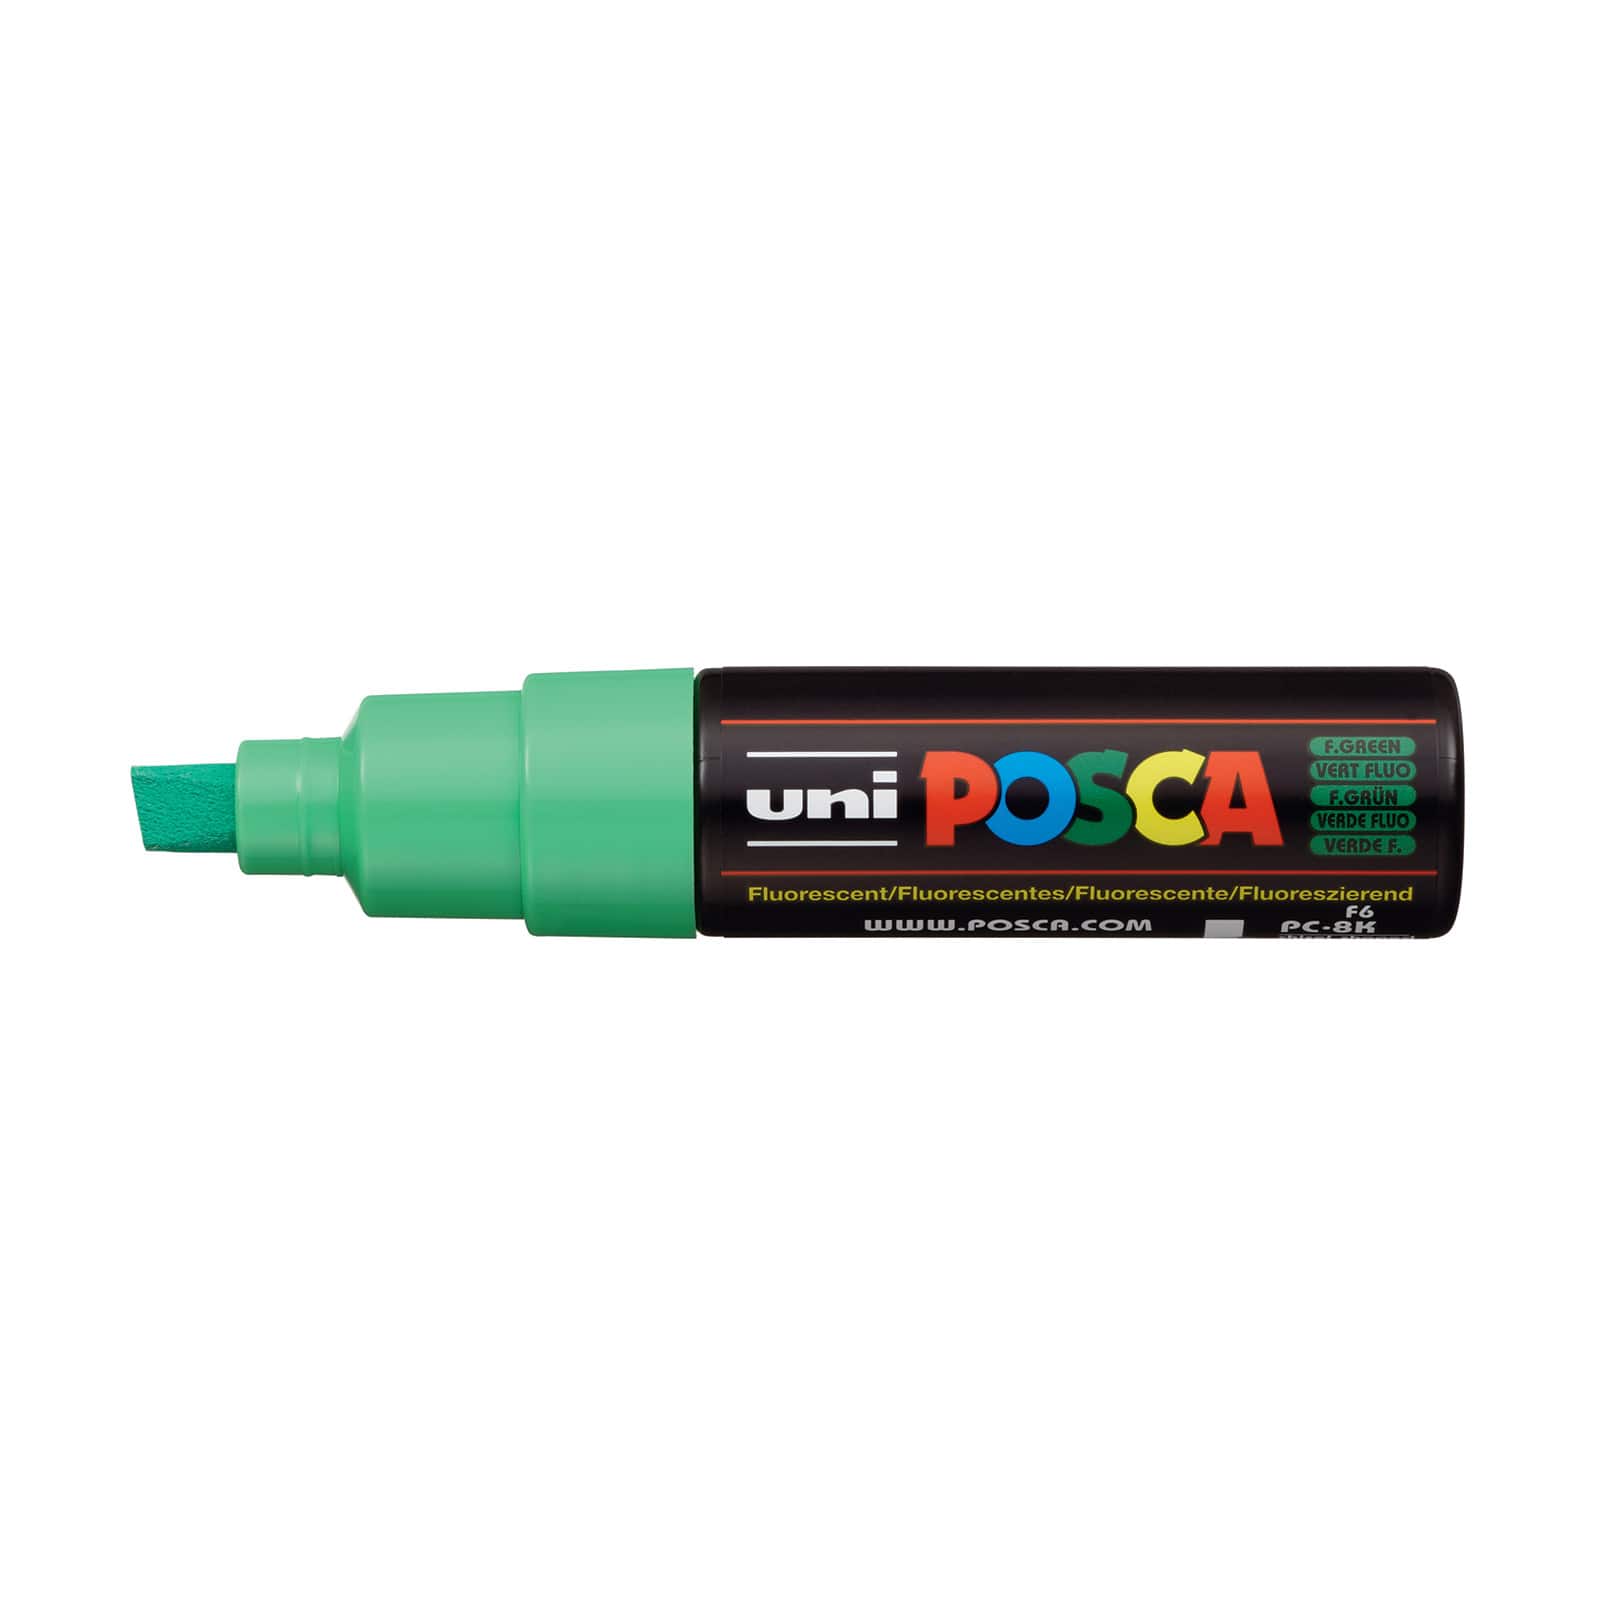 Uni Posca Paint Marker Art Pens PC-5M Medium Wallet Set of 8 Pastel Colors